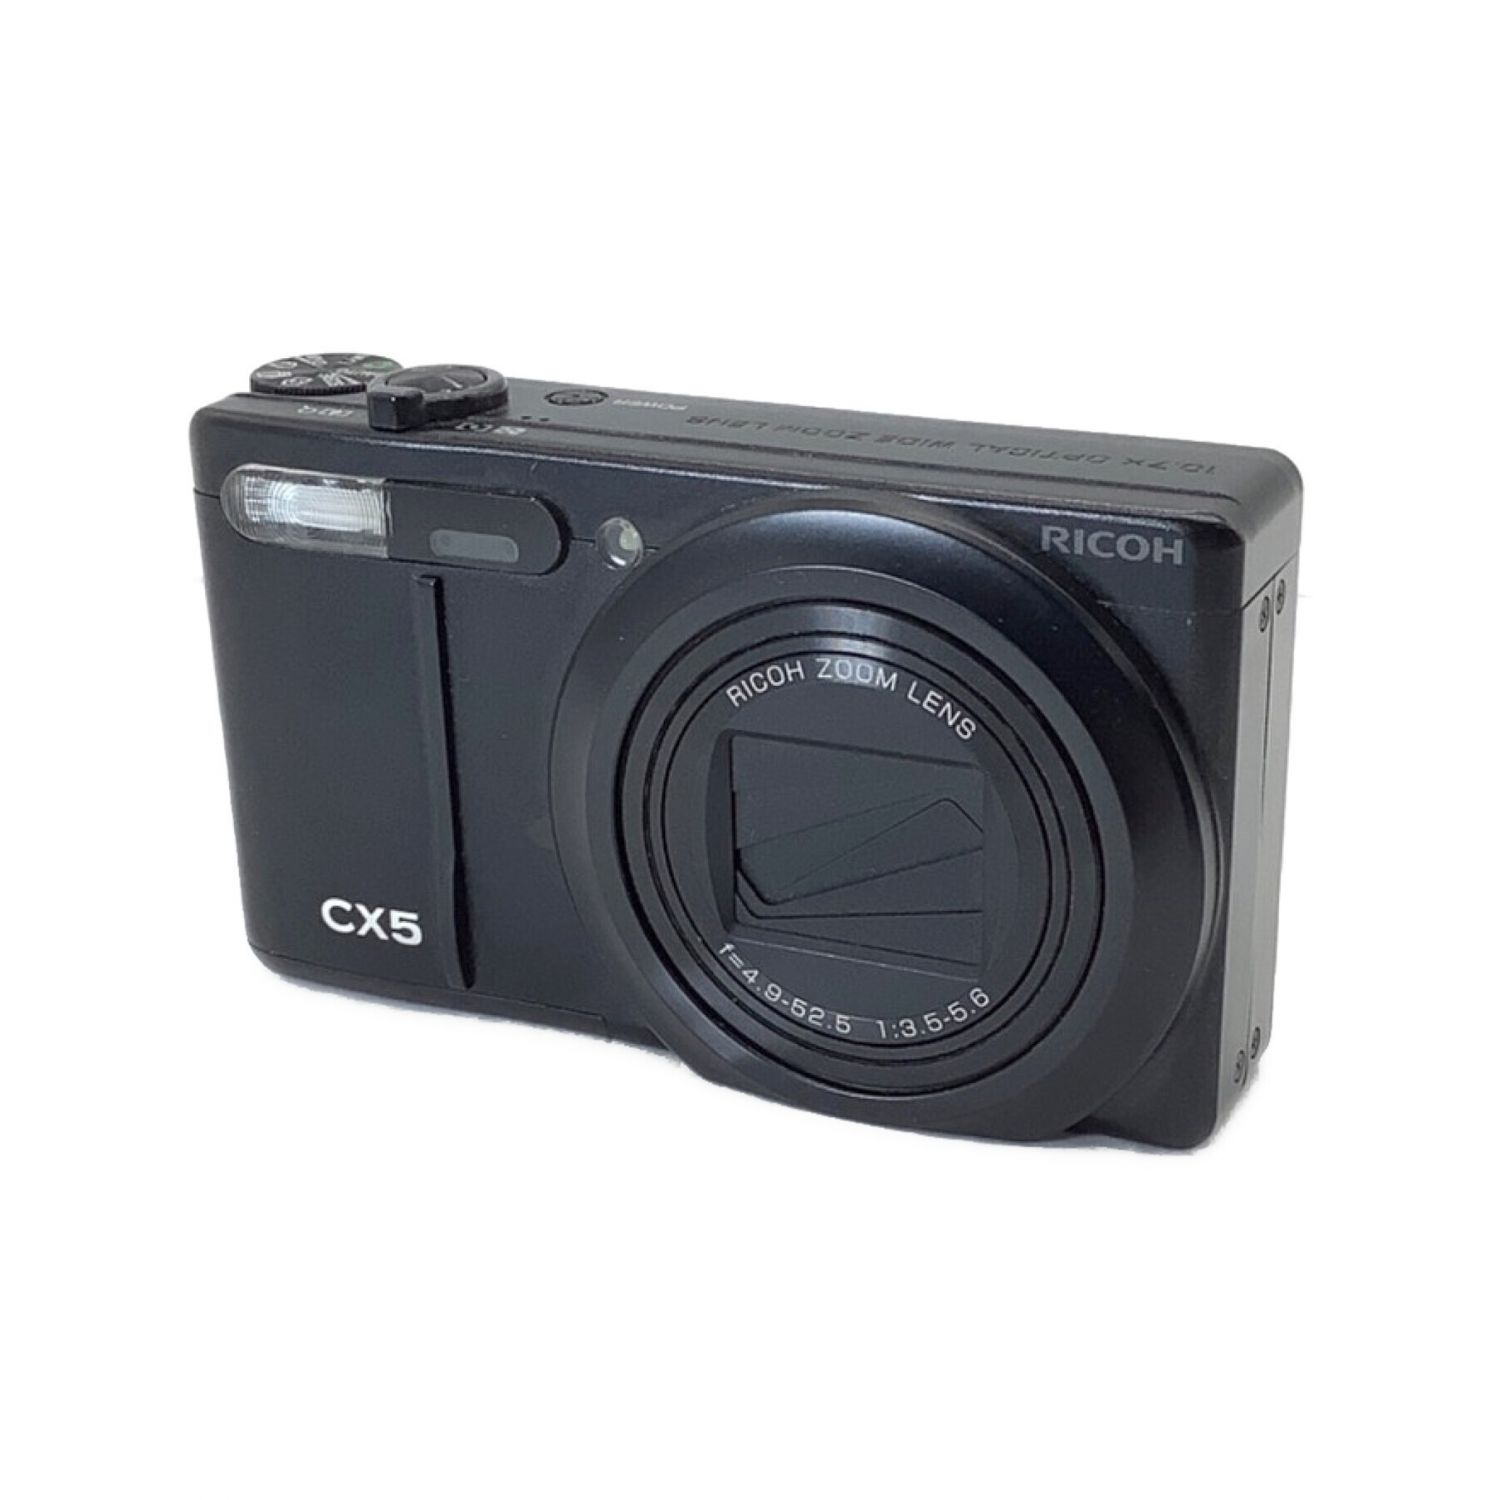 RICOH (リコー) コンパクトデジタルカメラ CX5 1000万画素 1/2.3型